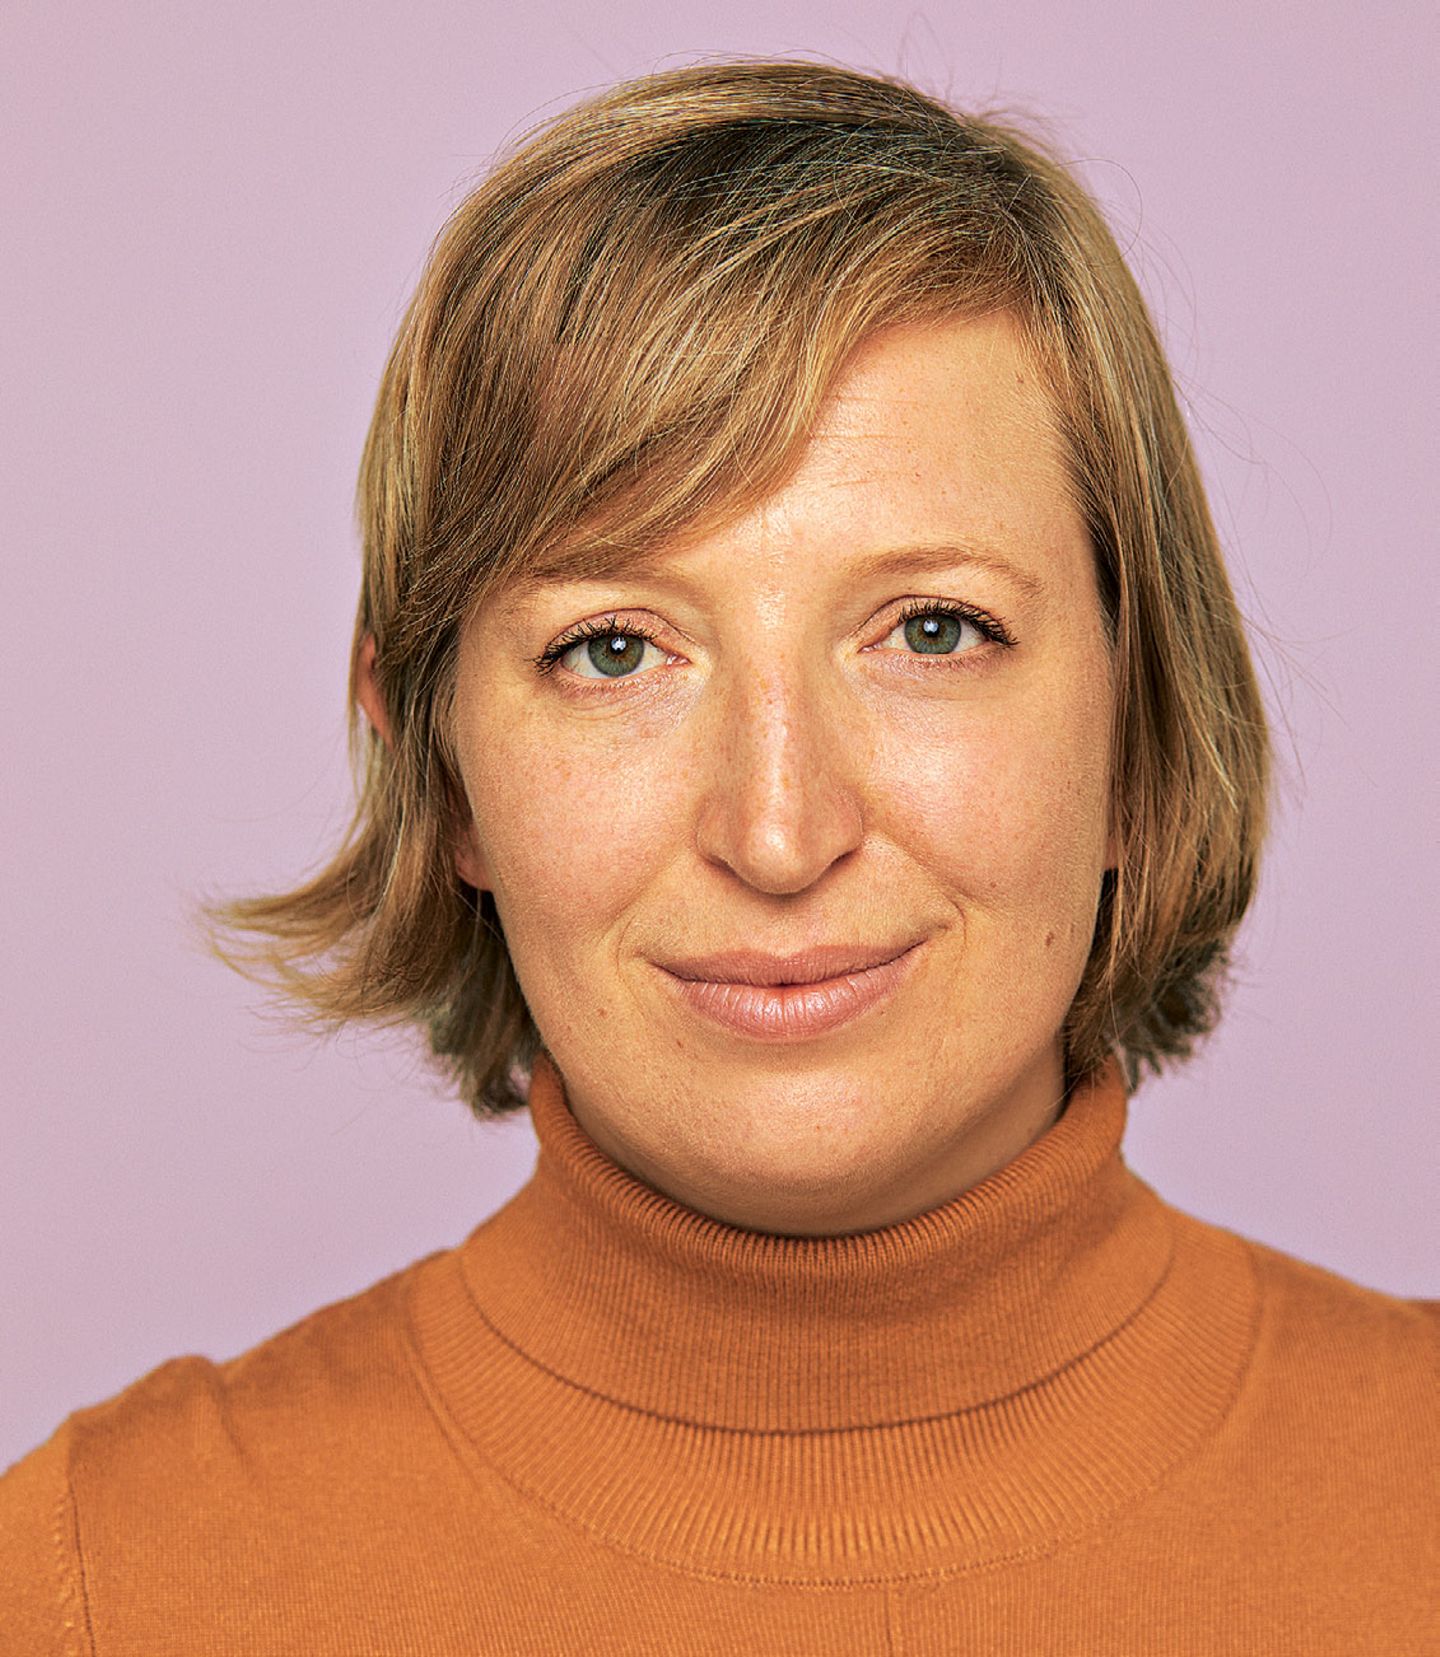 Frisur: Kathrin Eschrich vor dem Umstyling